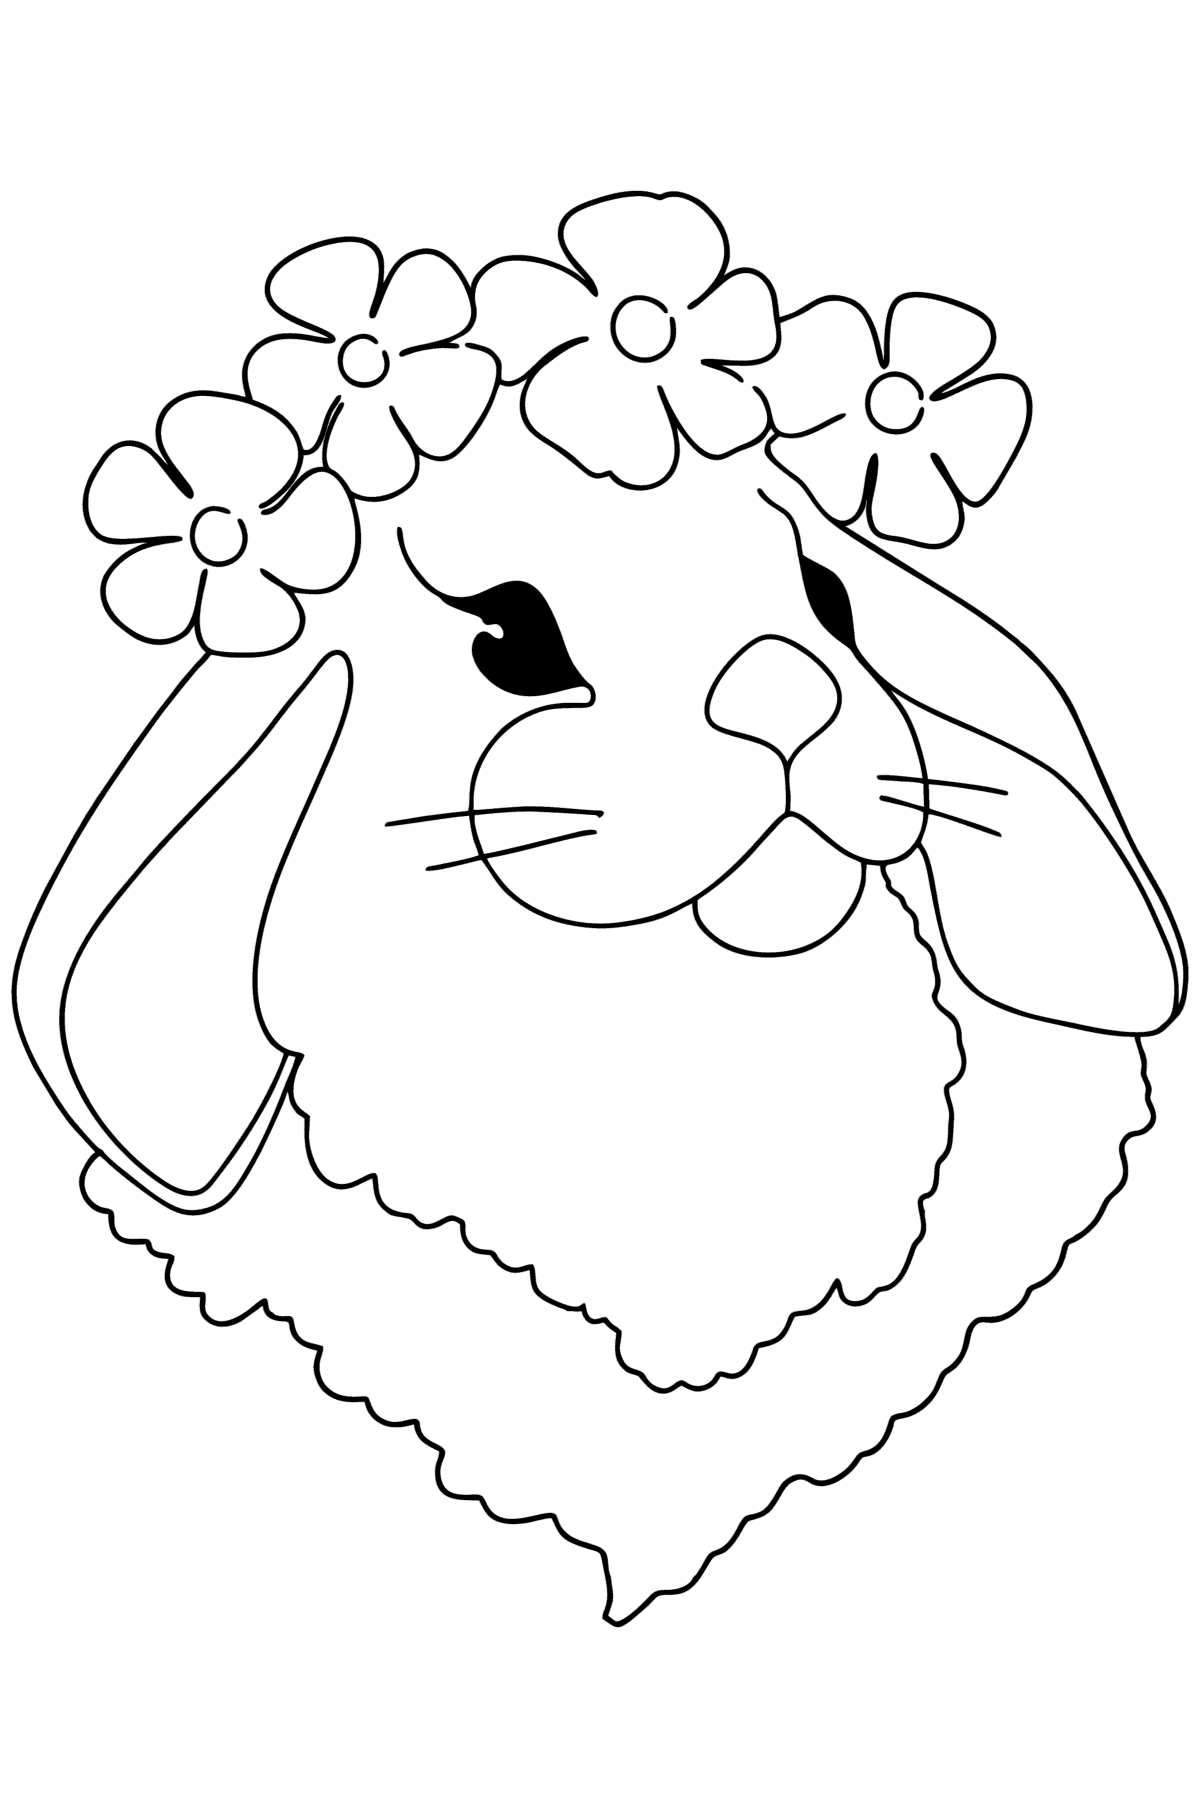 Boyama sayfası tavşan yüzü - Boyamalar çocuklar için